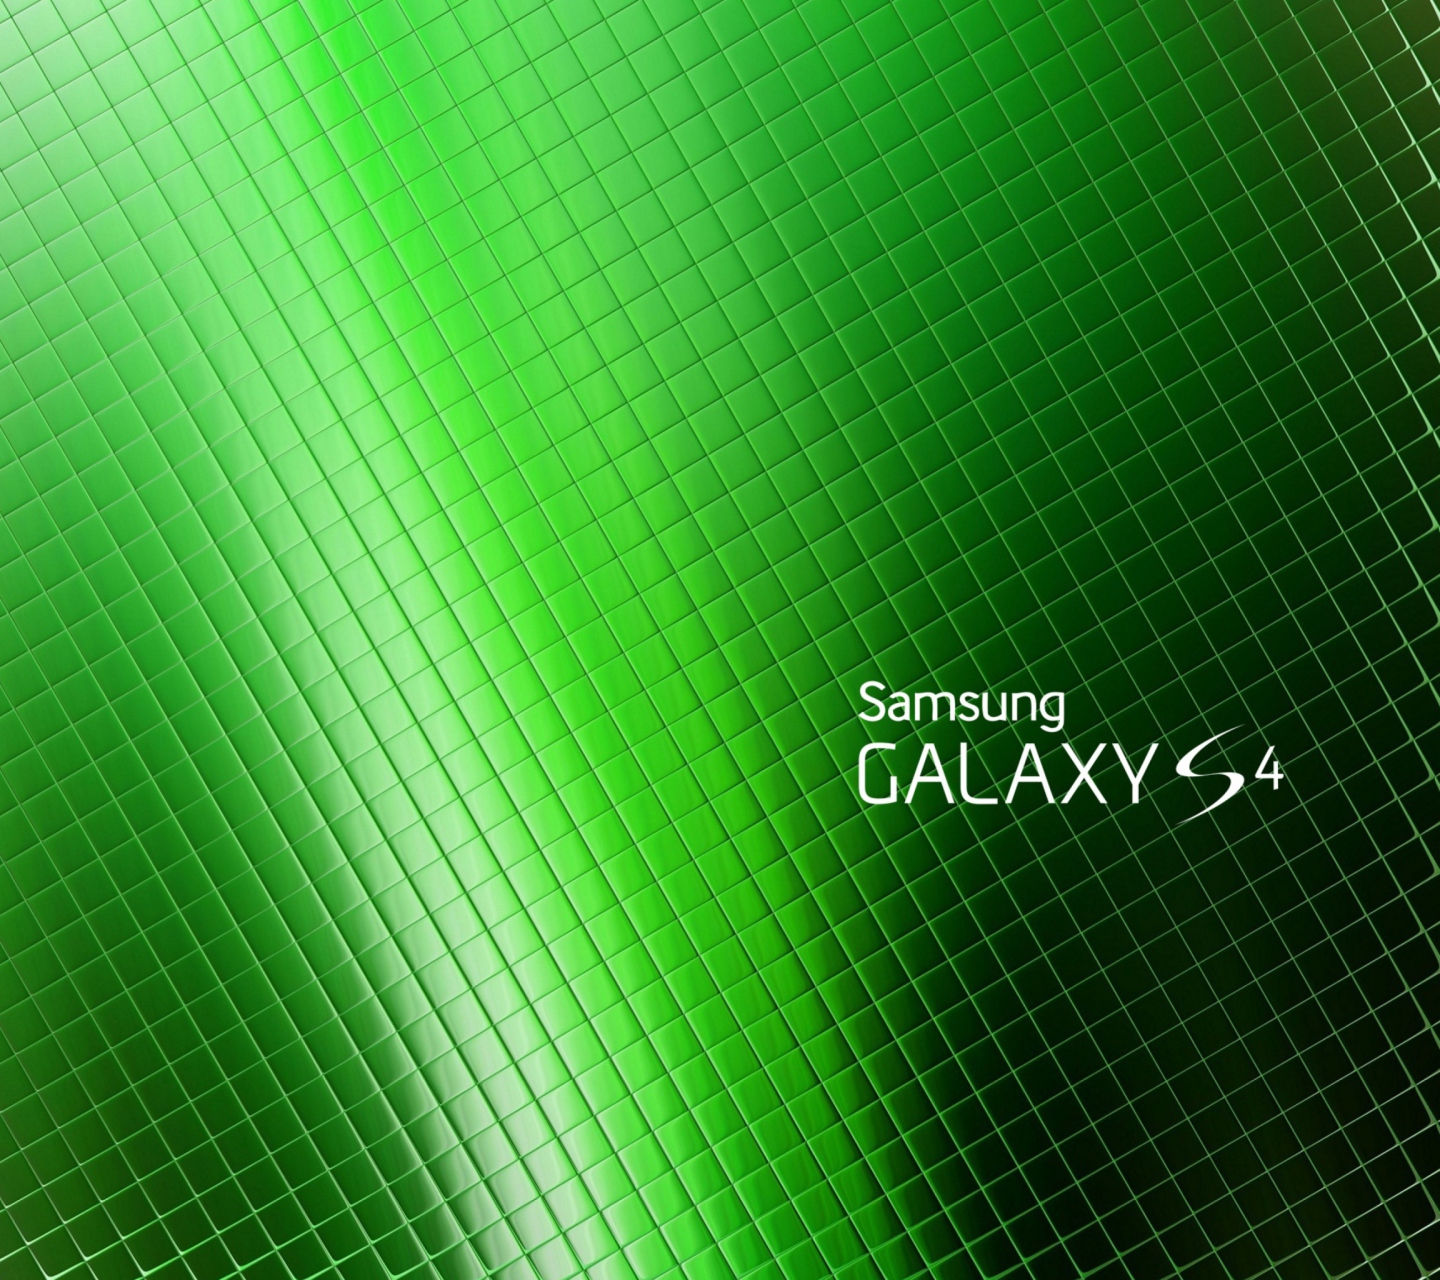 Galaxy S4 wallpaper 1440x1280